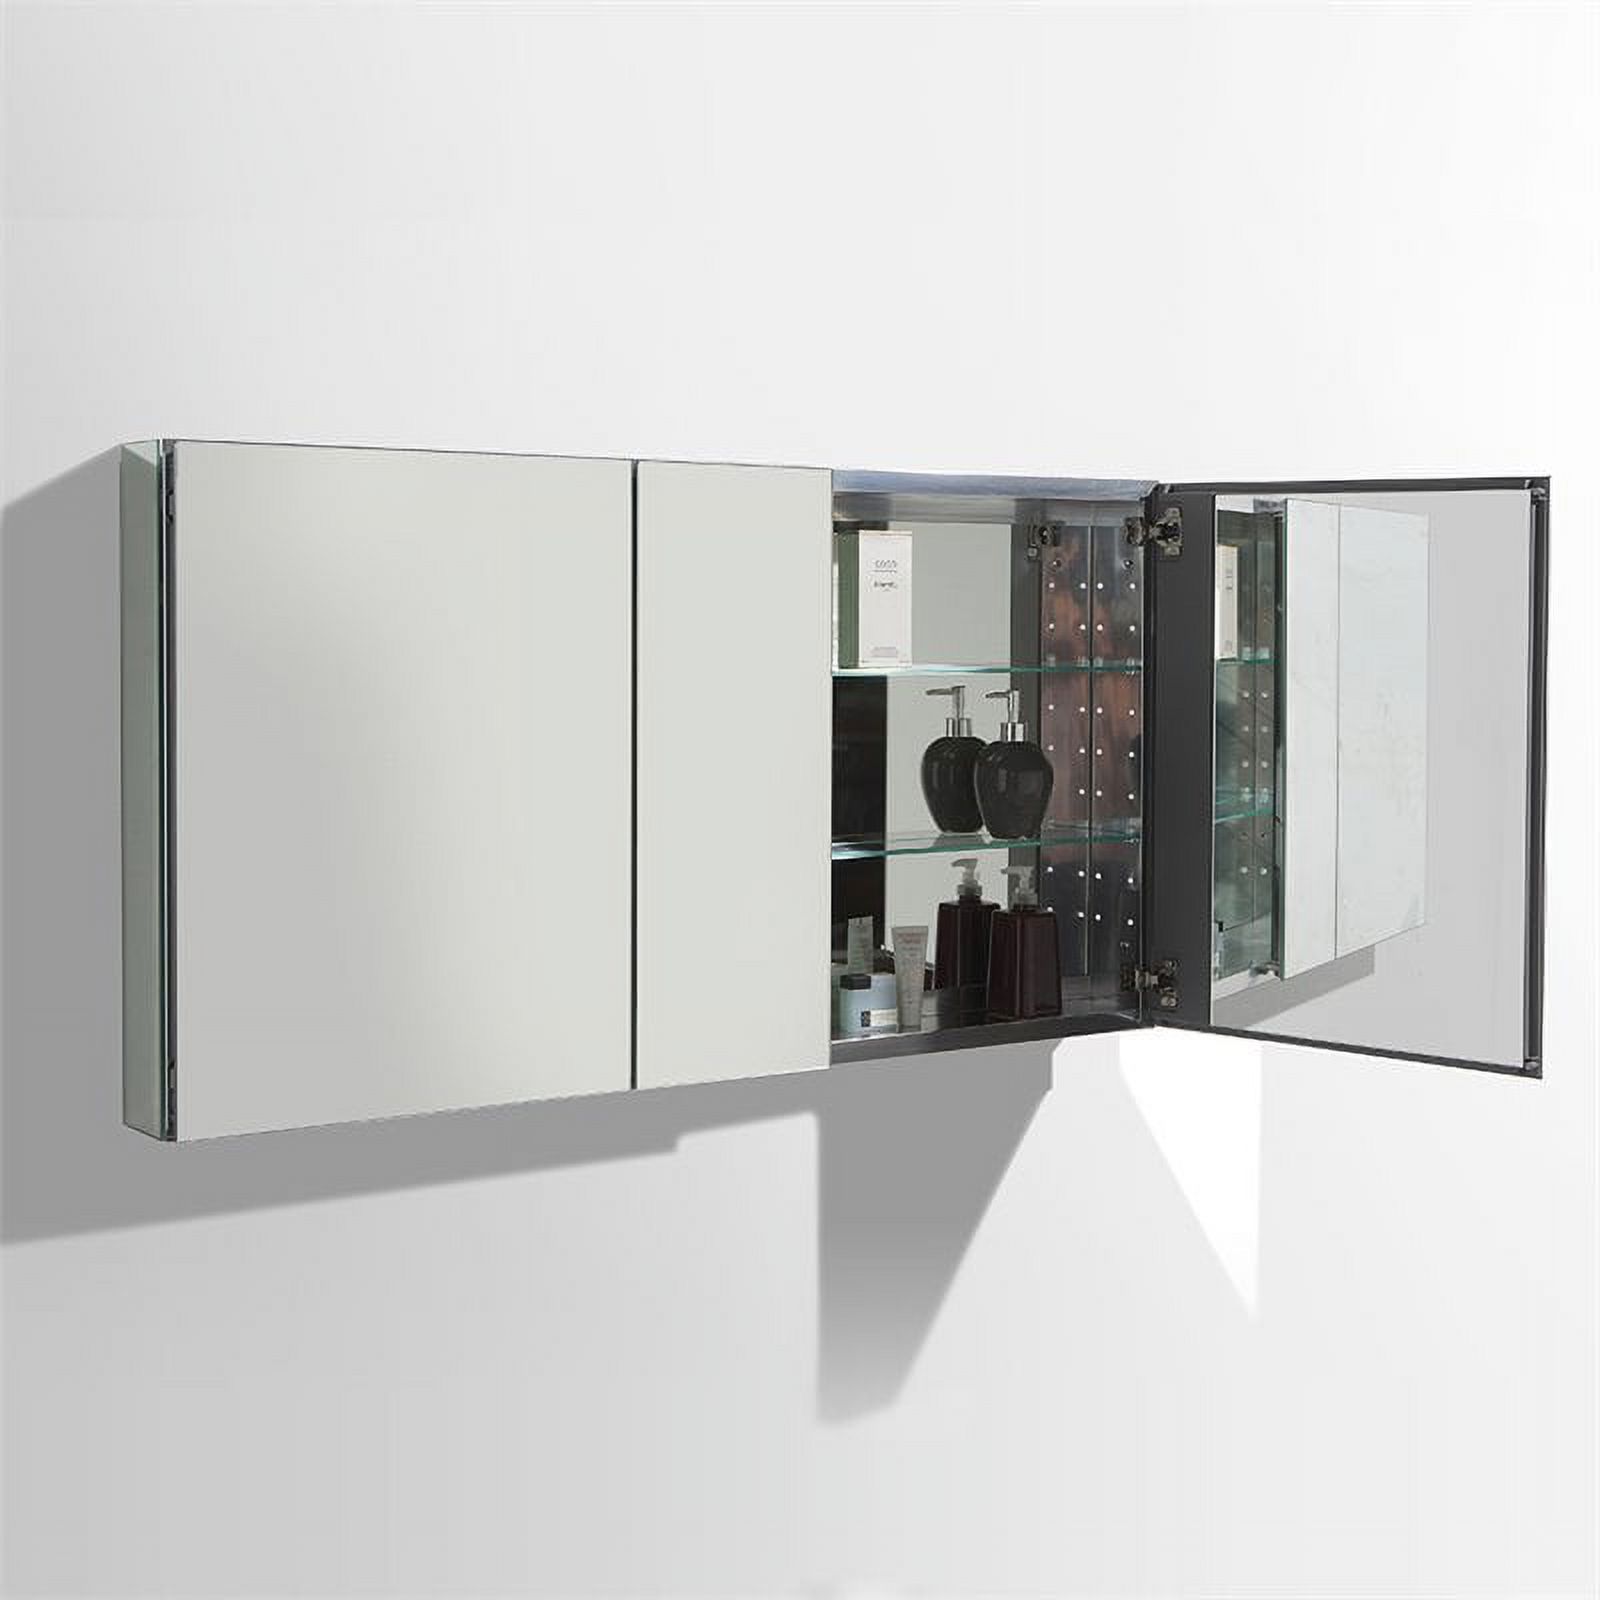 50"Wide Bathroom Medicine Cabinet & Mirrors - image 5 of 8